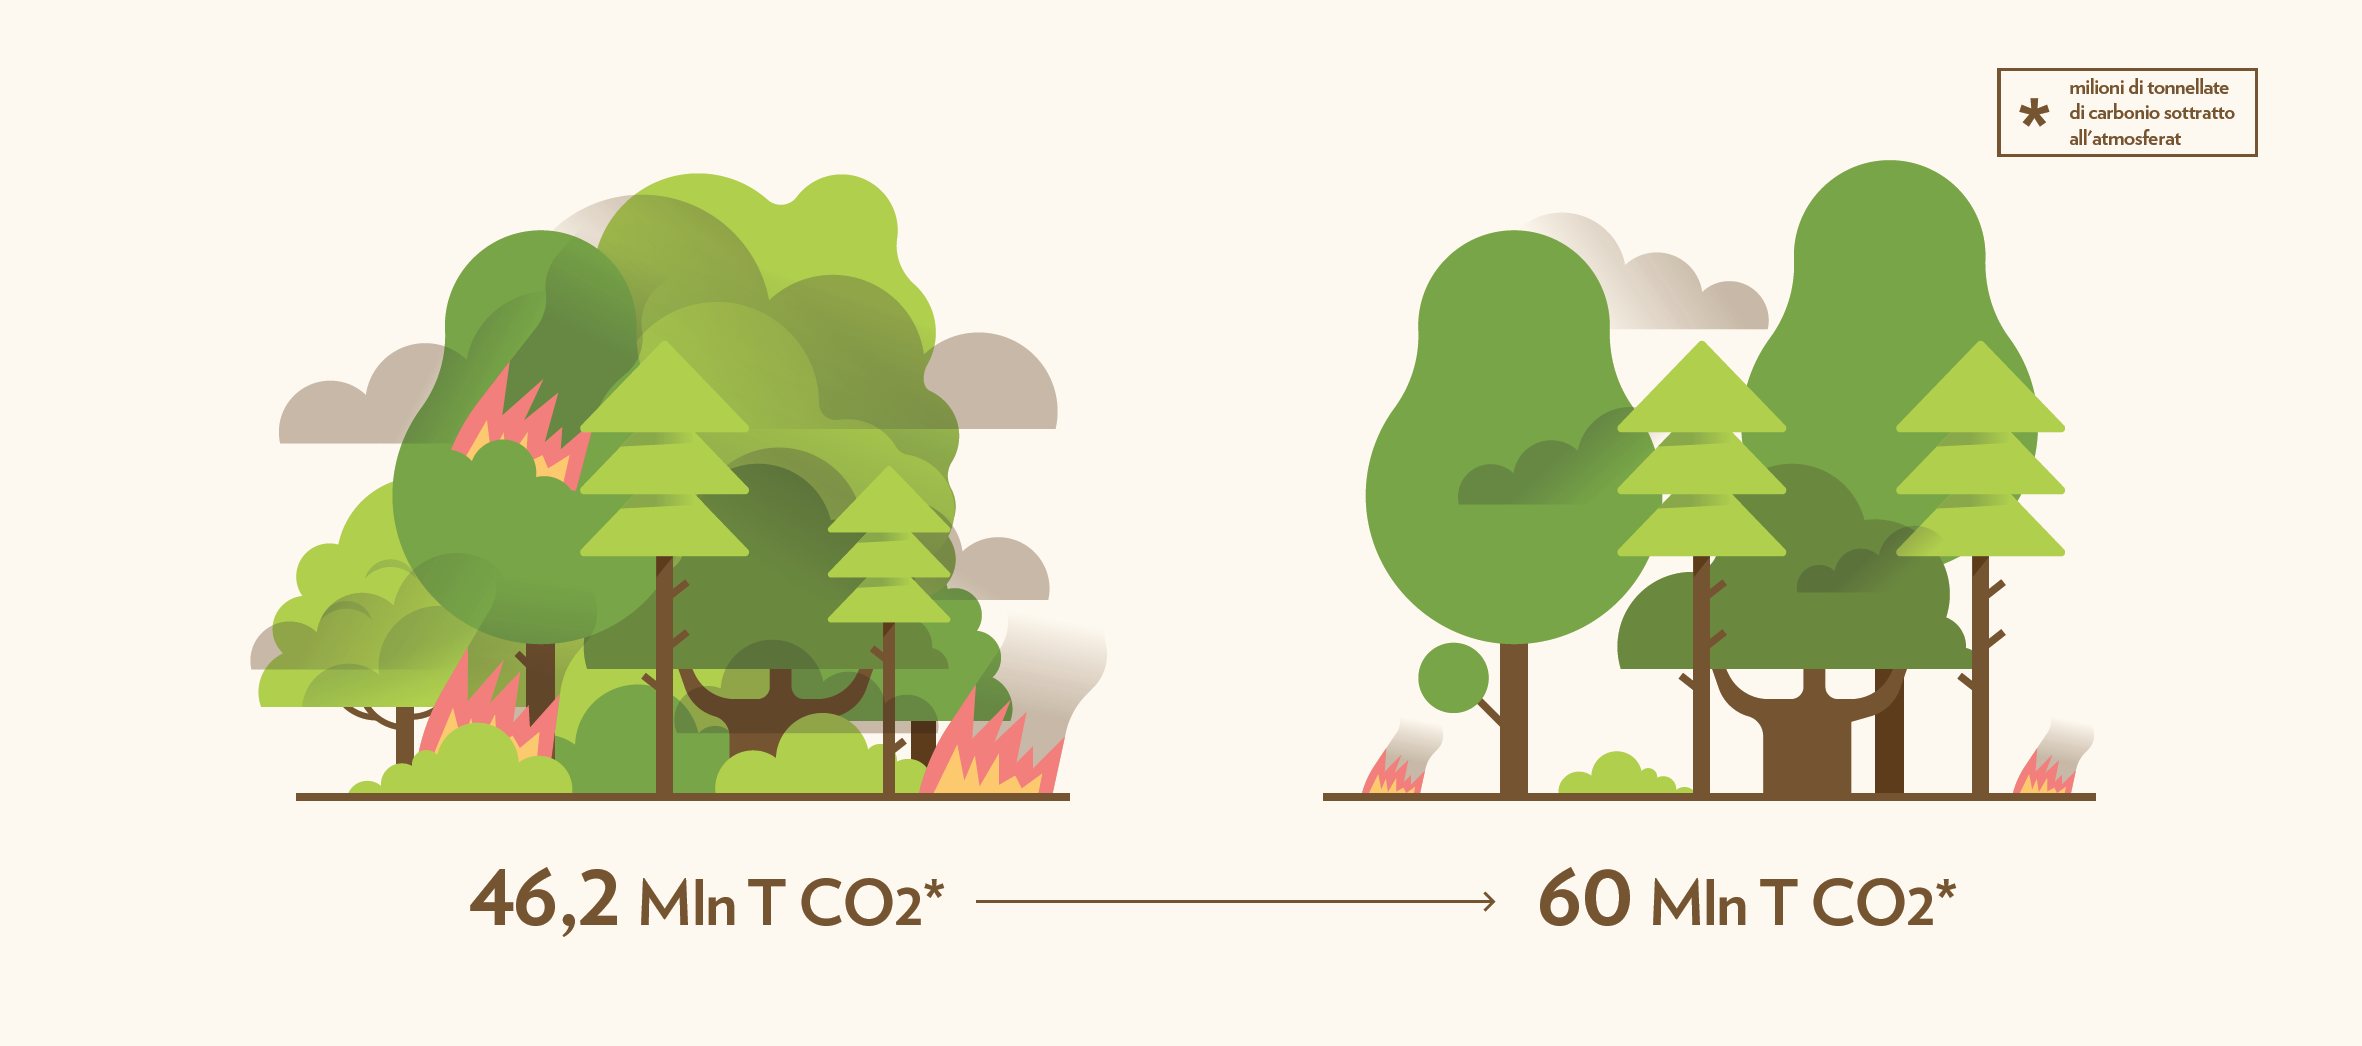 La gestione sostenibile dei boschi italiani può migliorare del 30% l’assorbimento di CO2